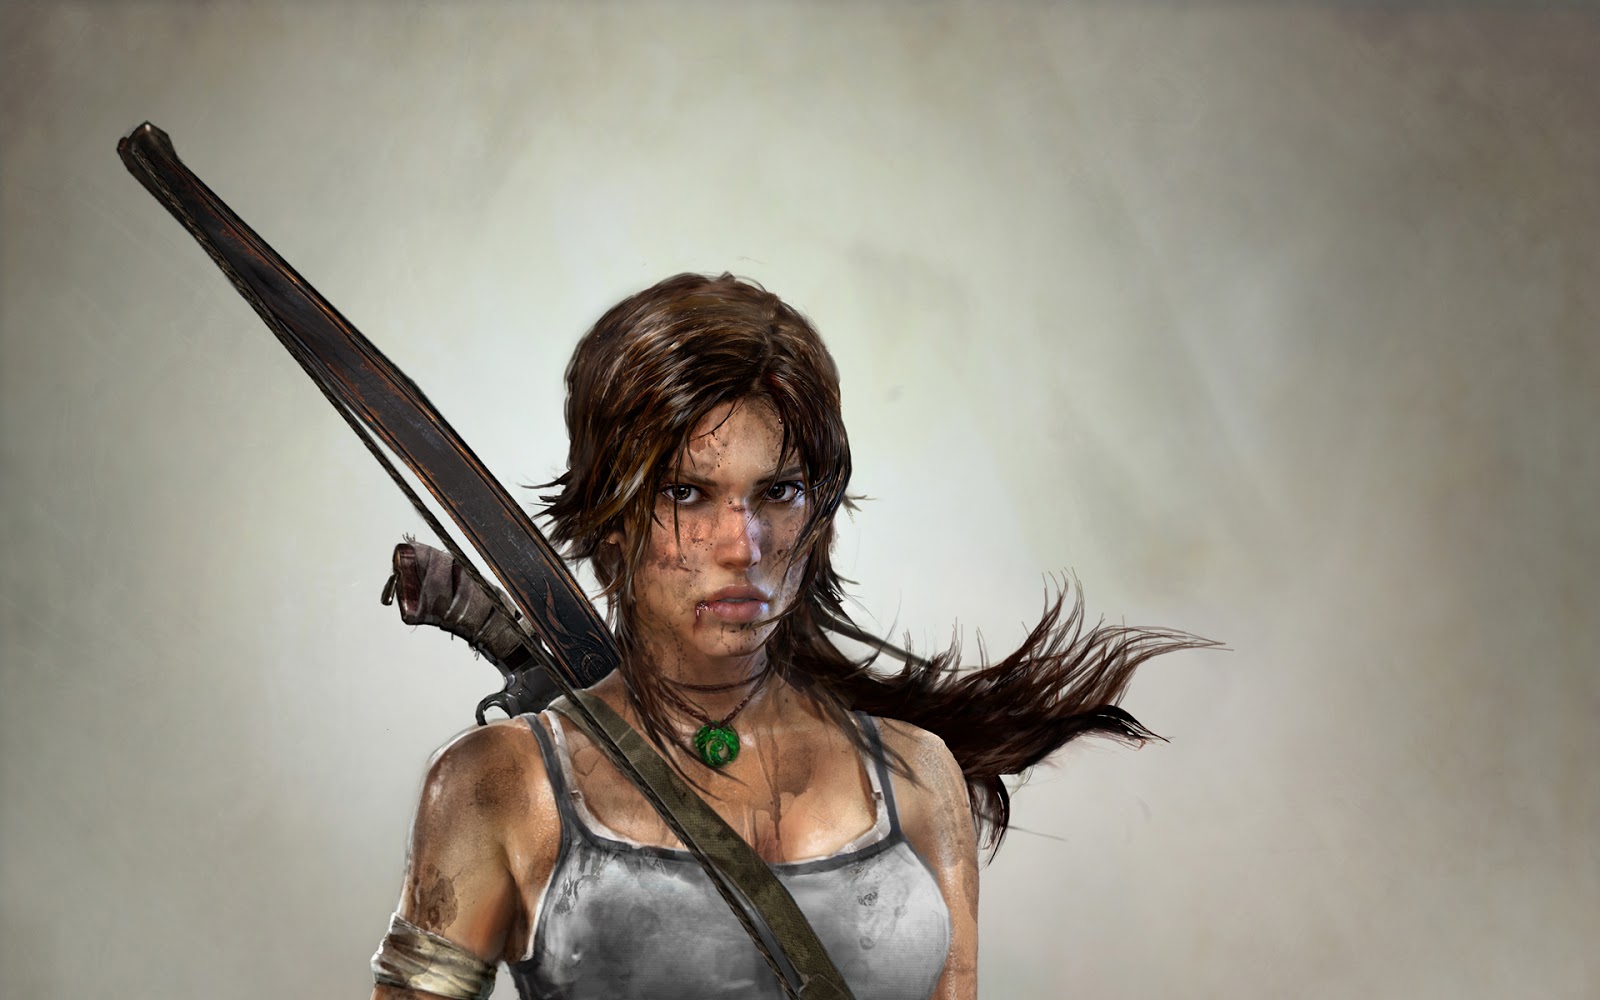 Lara Croft - The Golden Skull